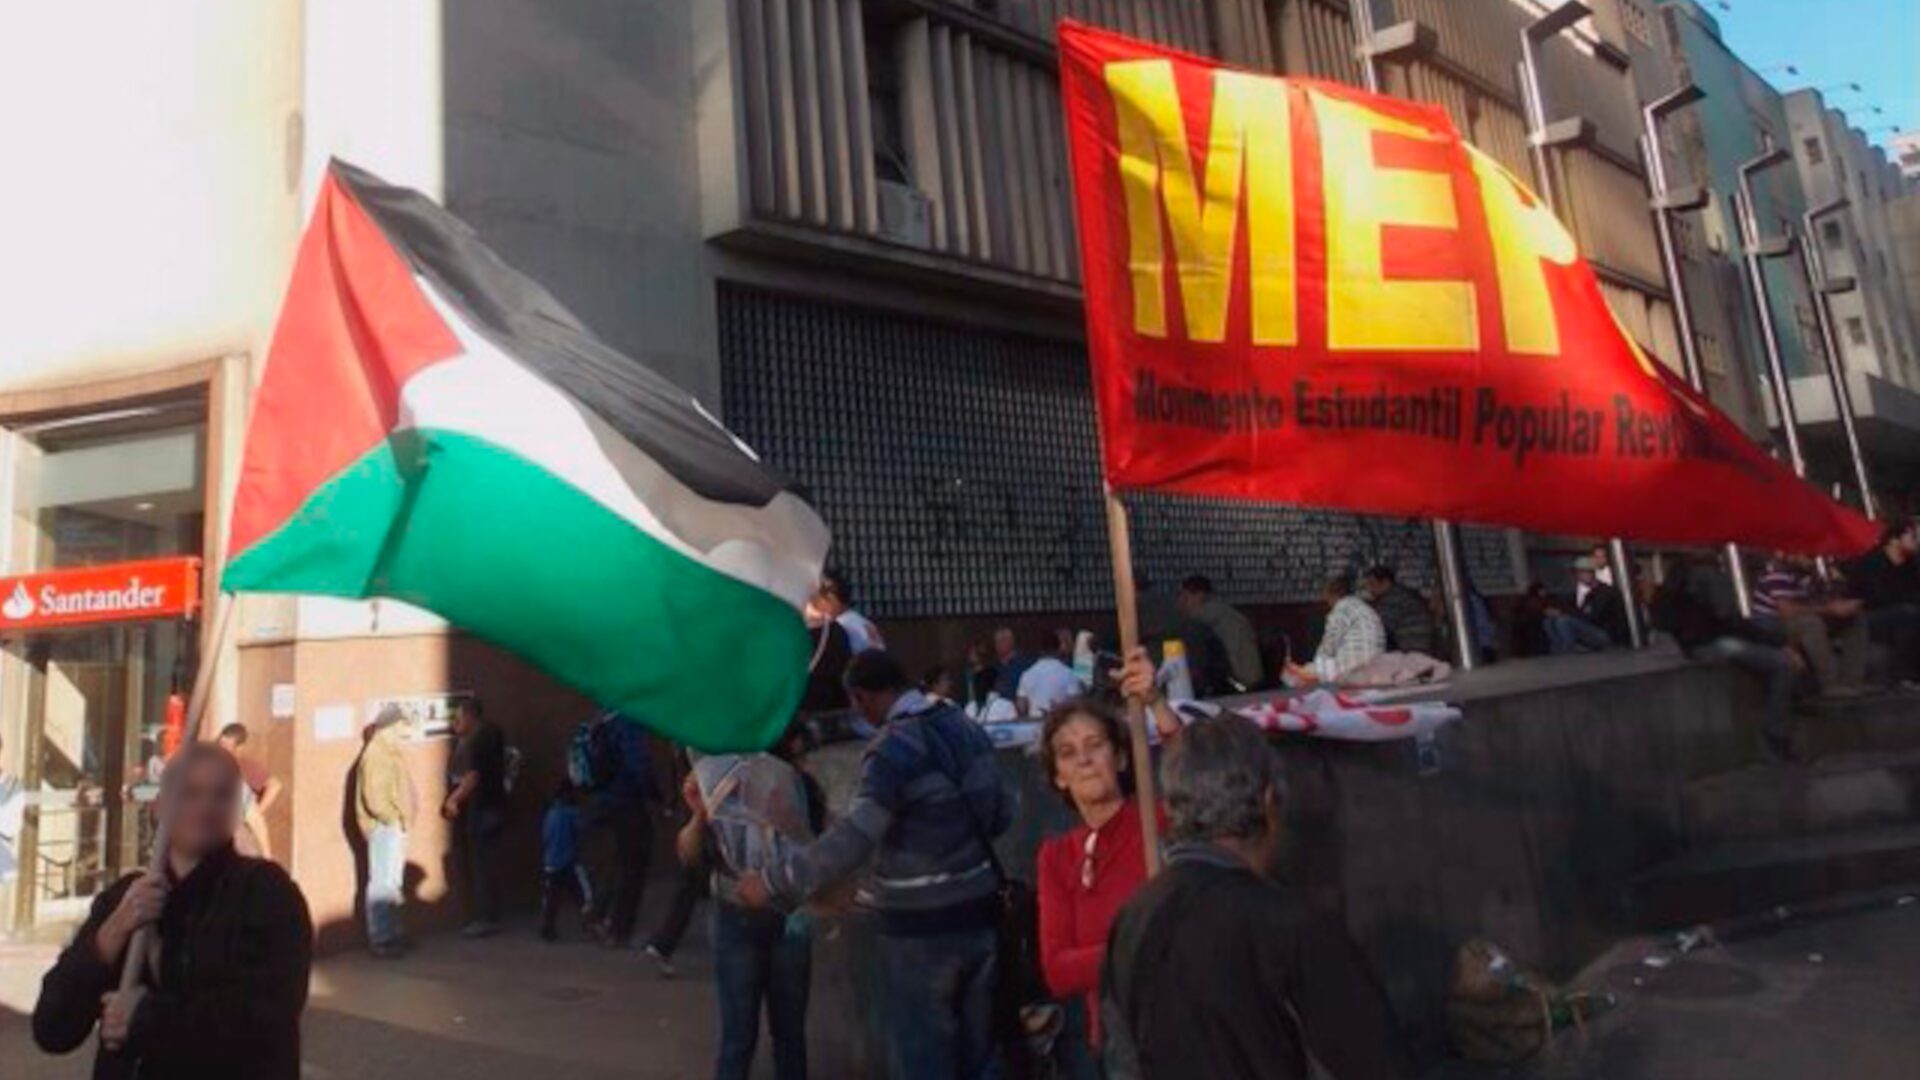 Companheira Sandra Lima, grande revolucionária e heroína do povo, agitando a bandeira do Movimento Estudantil Popular Revolucionário (MEPR) enquanto outra ativista empunha a bandeira da Palestina.